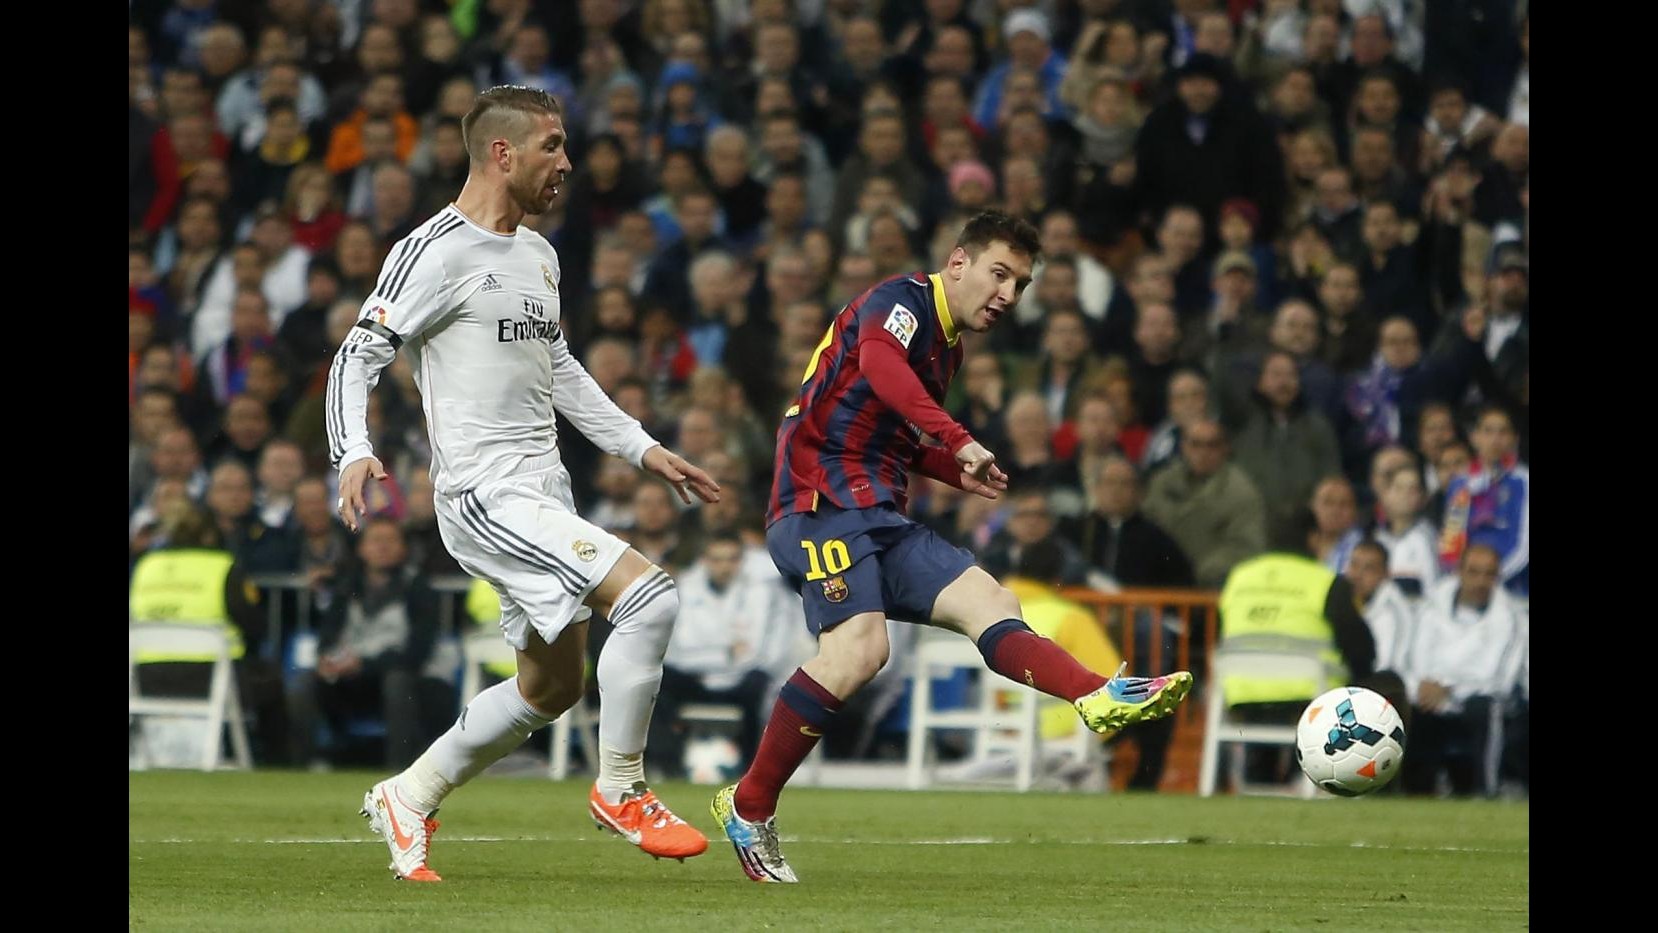 Liga, Real Madrid: procedimento disciplinare contro Ronaldo e Ramos per dichiarazioni dopo ‘clasico’